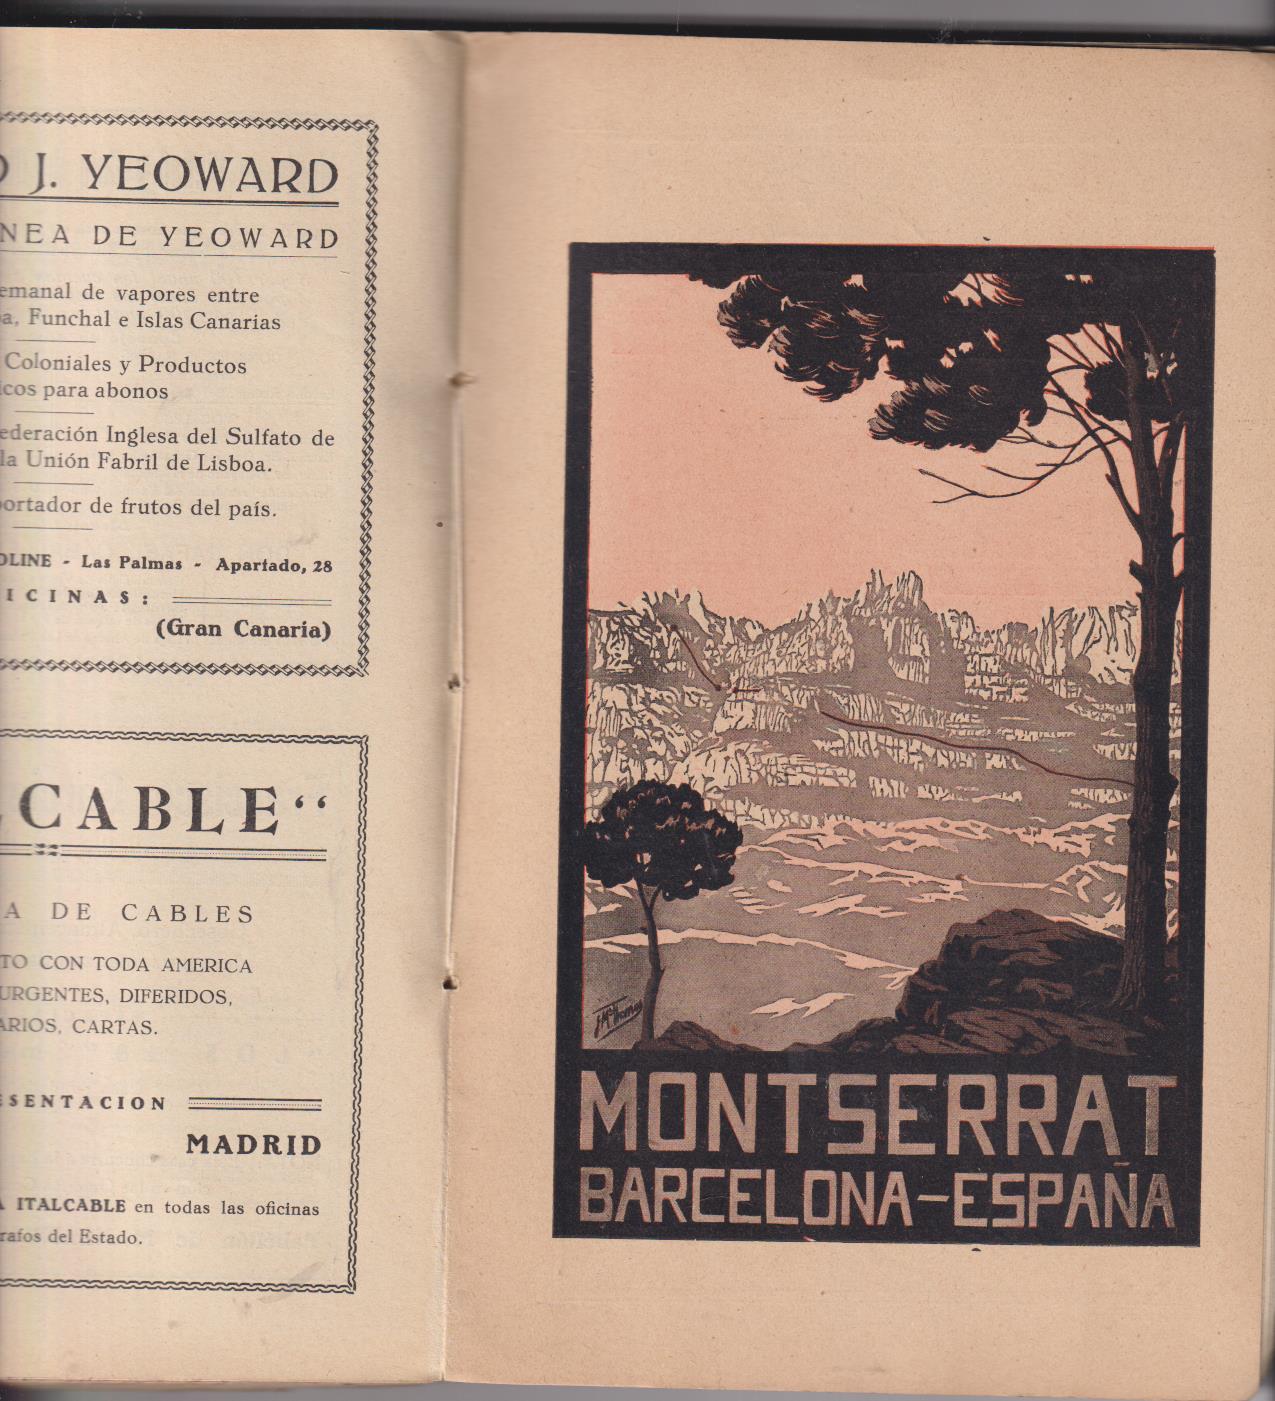 Sevilla Exposición Iberoamericana 1929-1930. Guía Oficial (23x14,5) 197 páginas